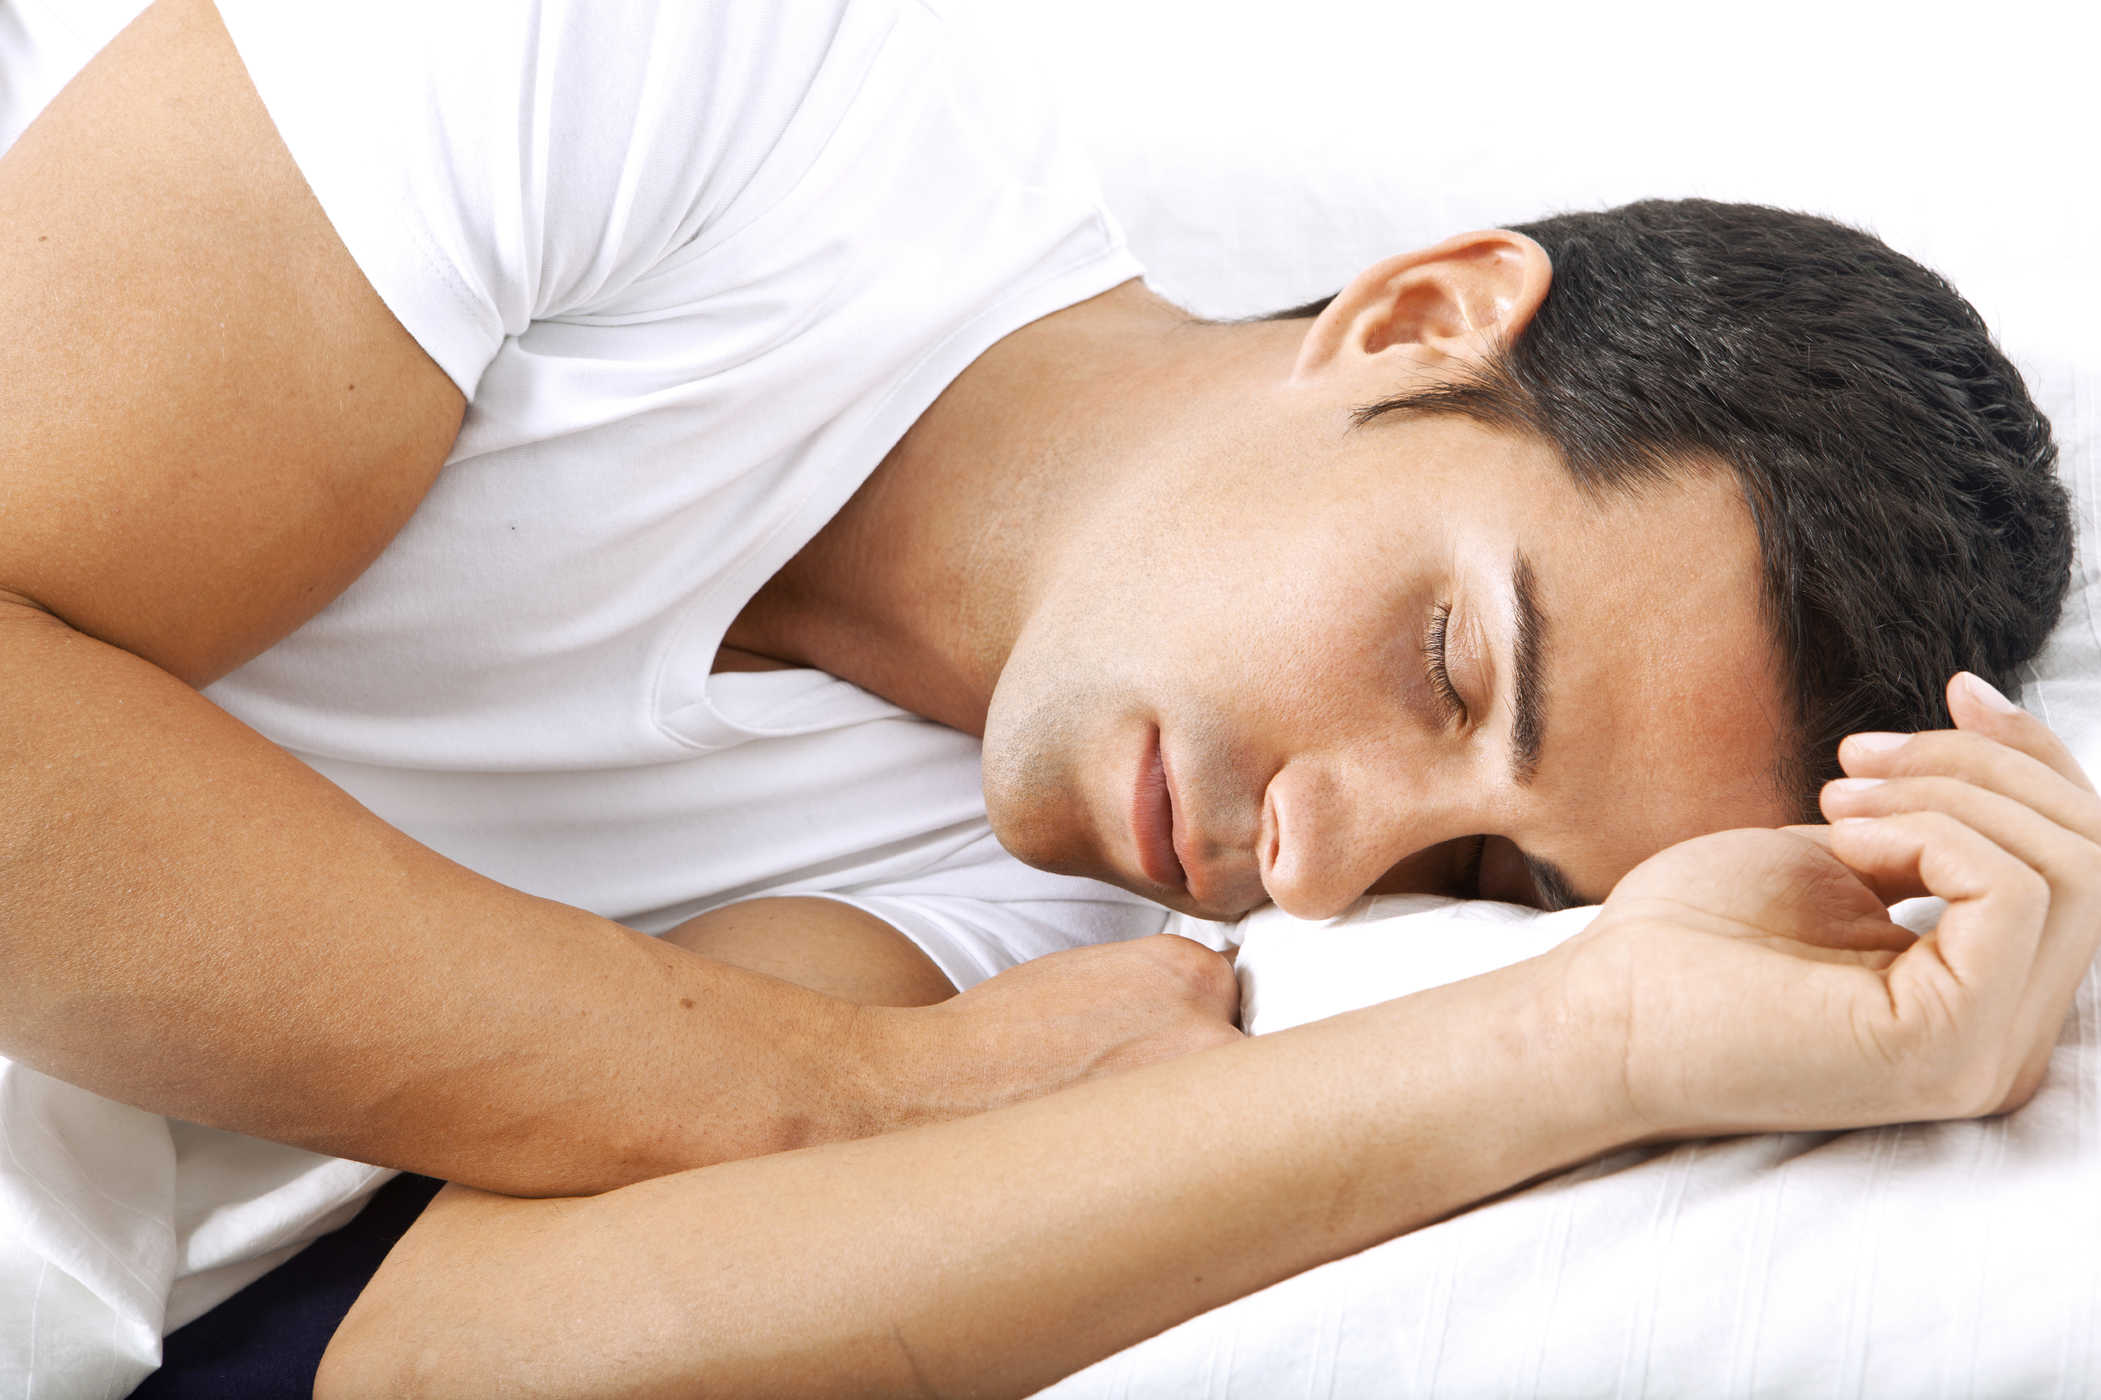 søvnskjønnhetssyndrom sov veldig lenge